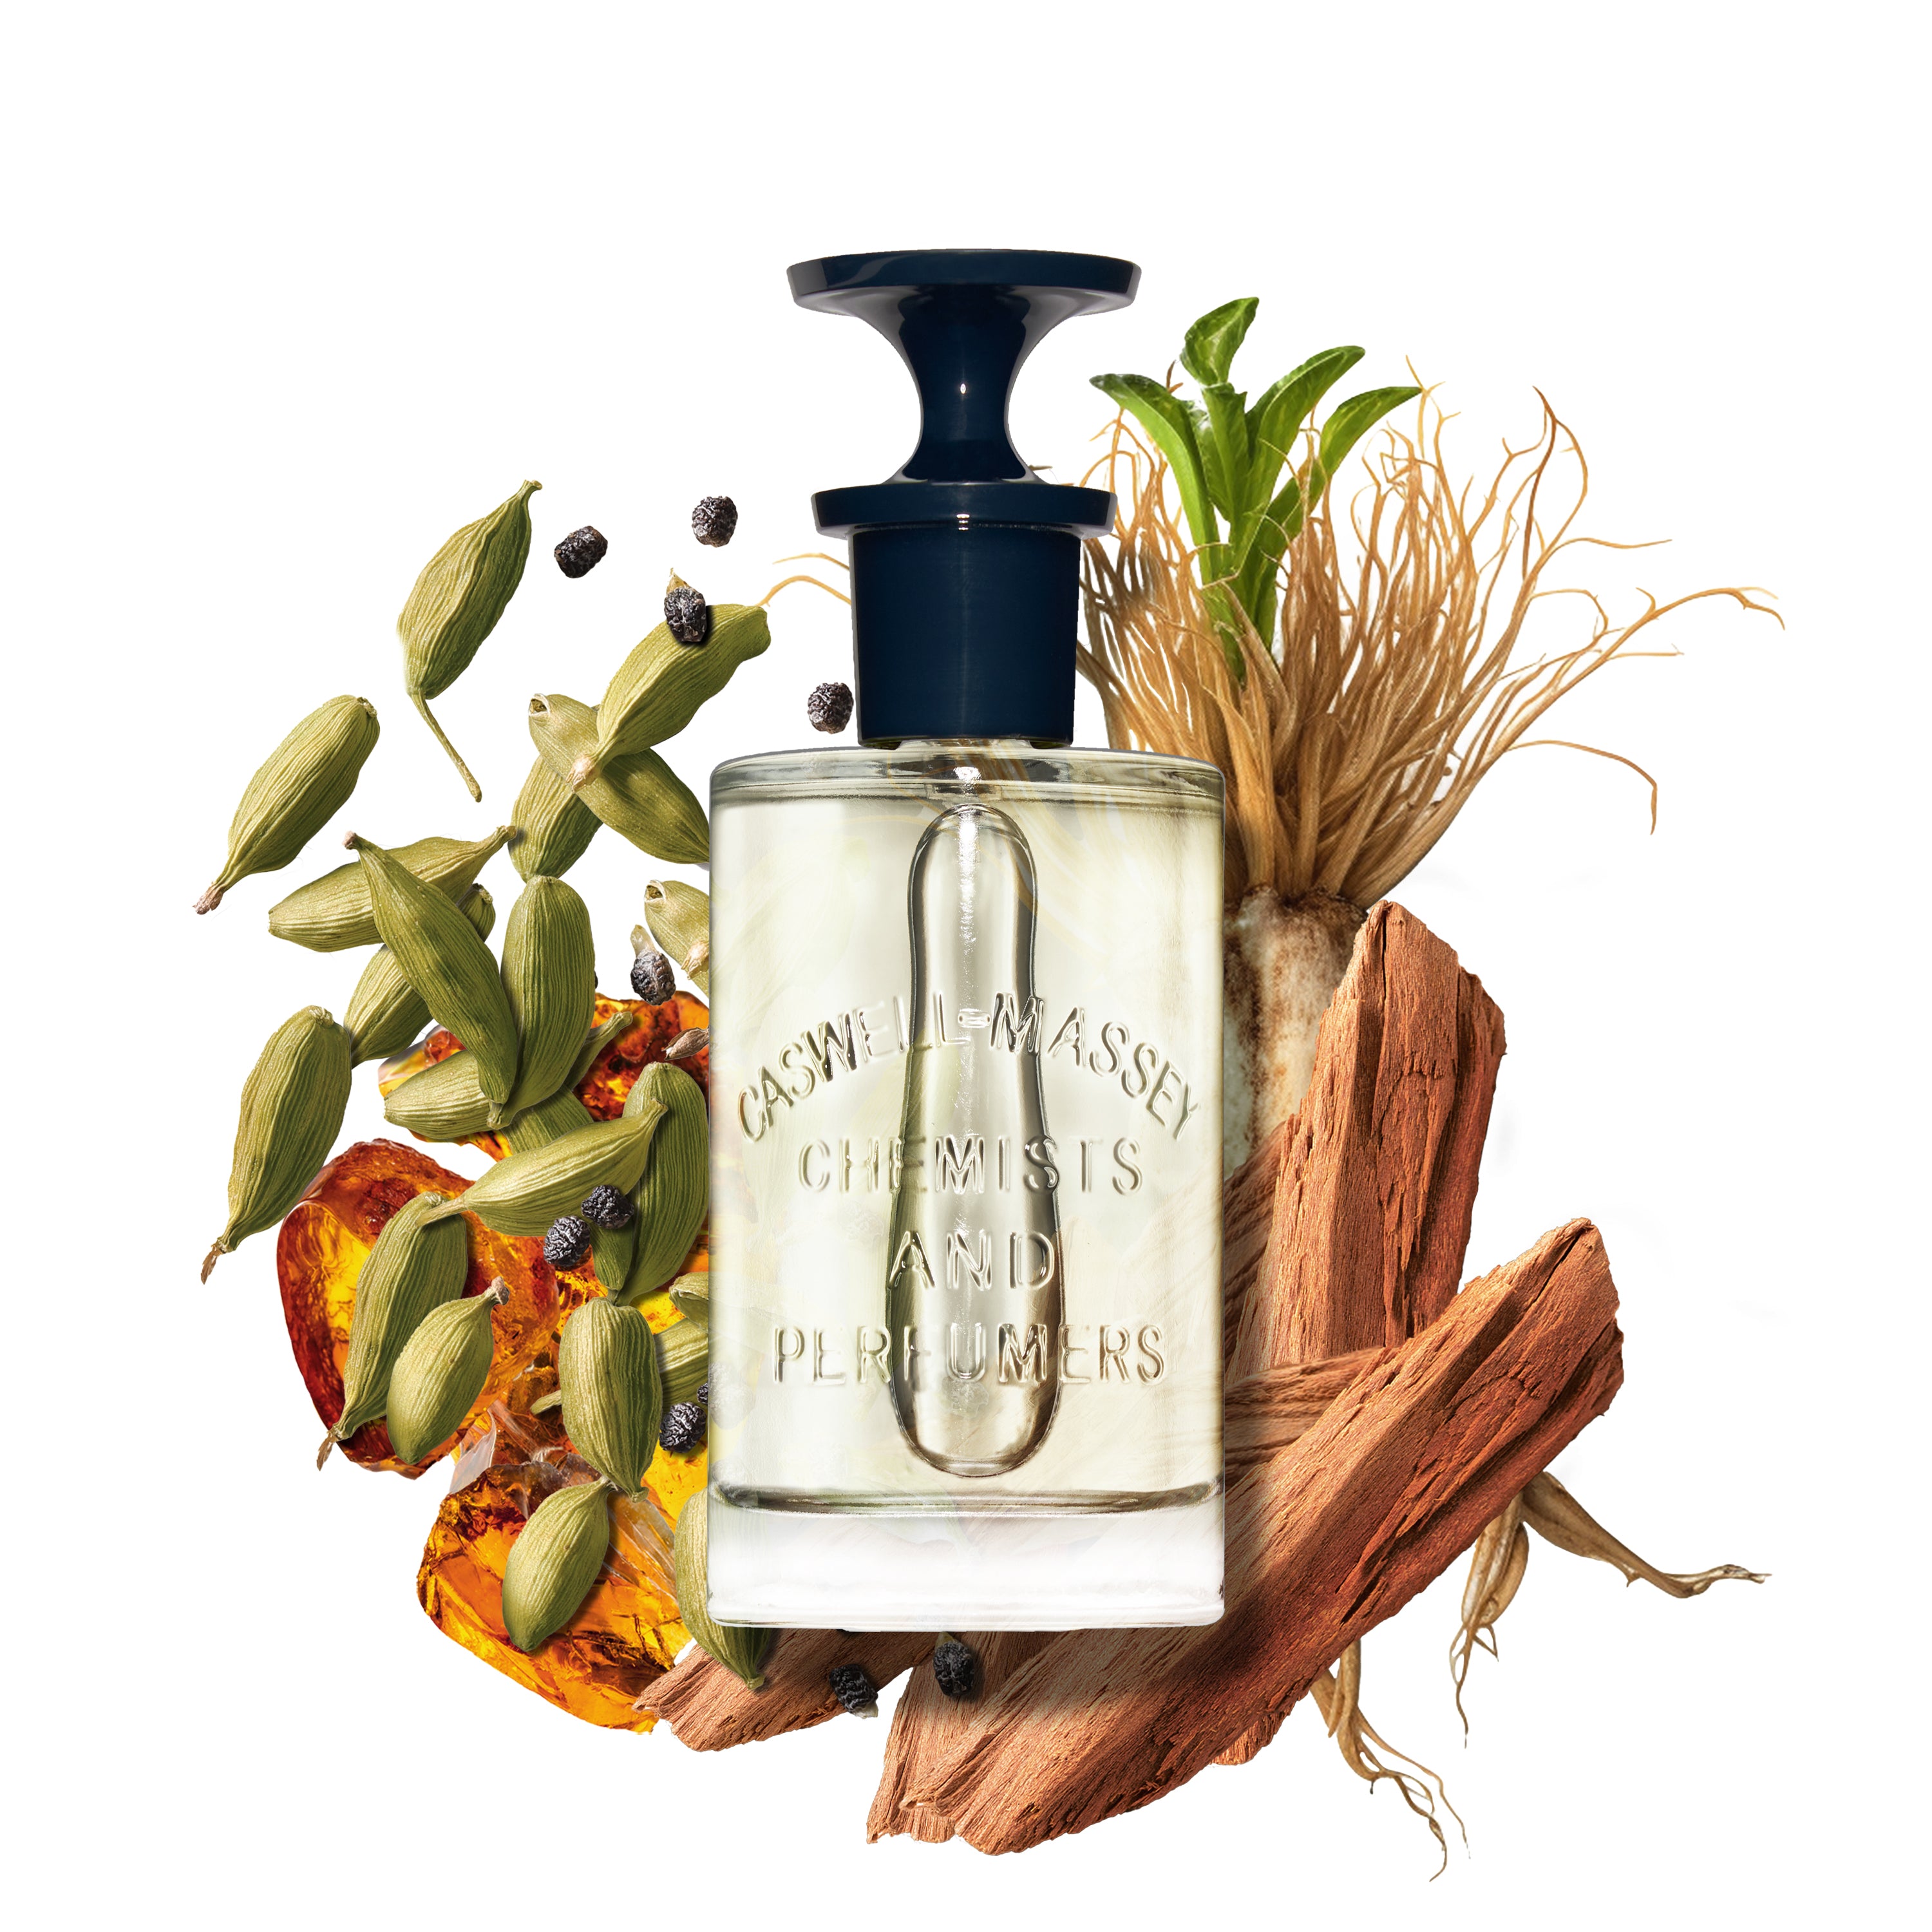 2571 Eau de Parfum Fragrance Caswell-Massey®   